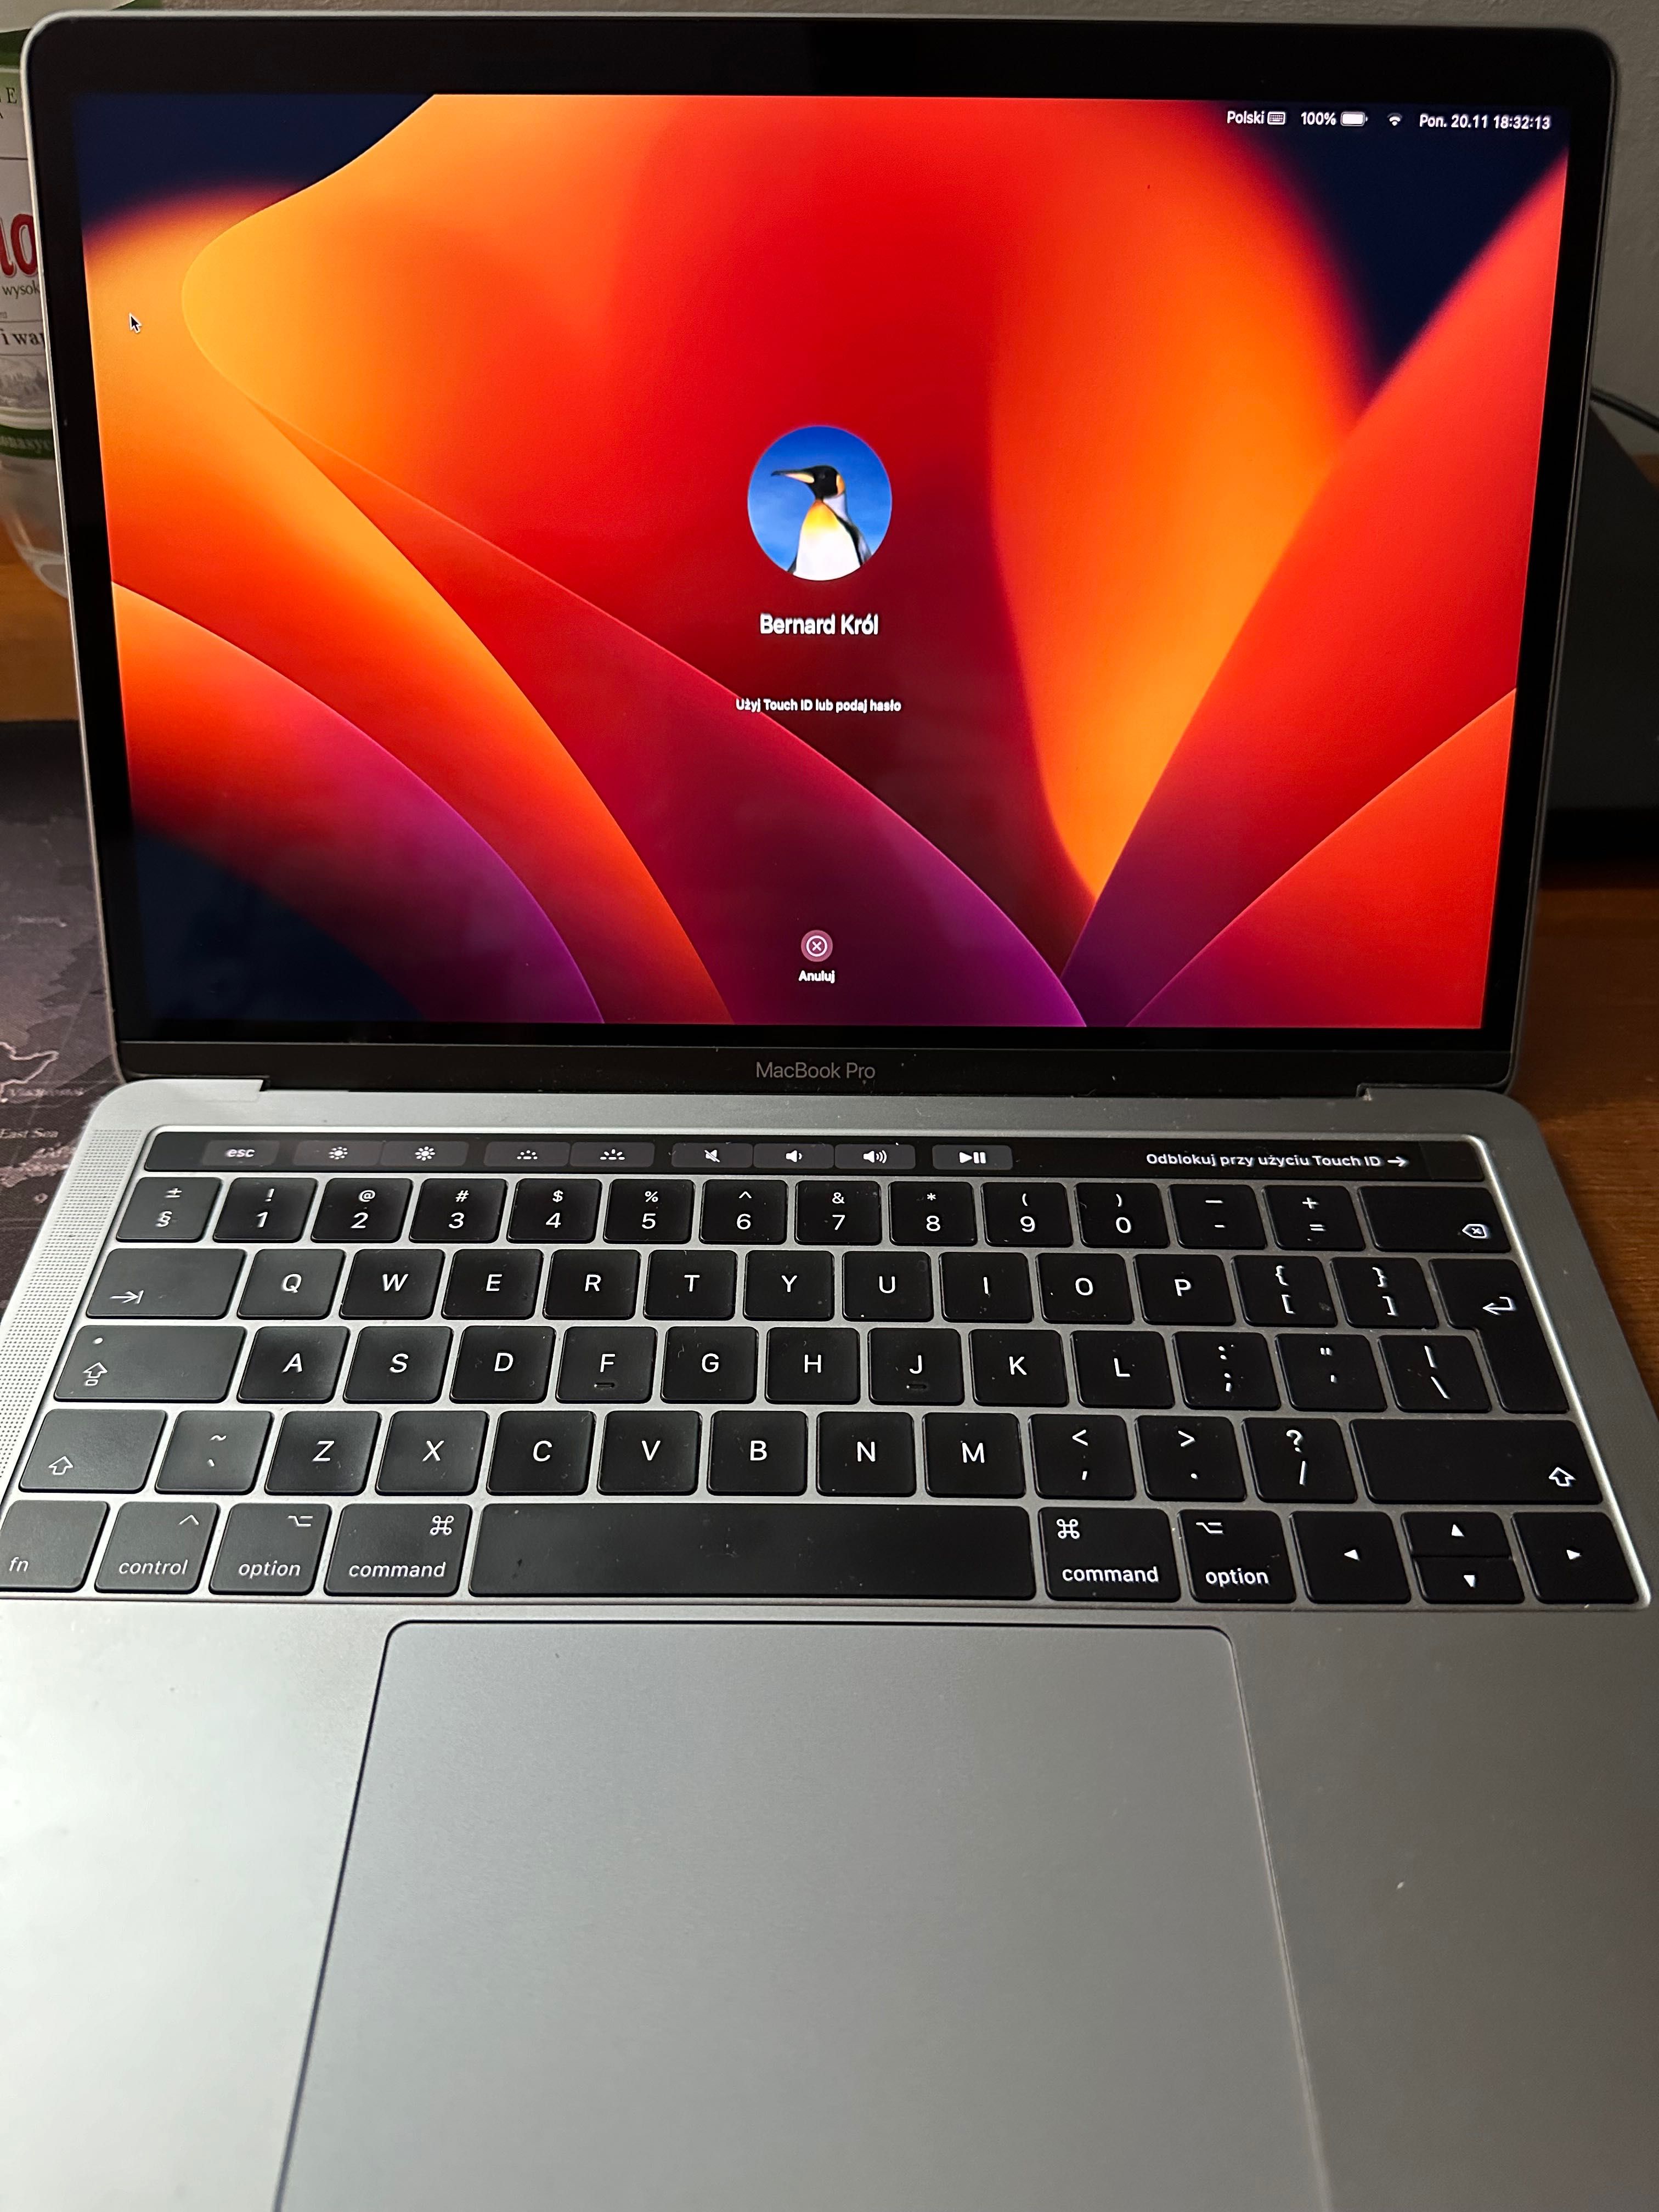 MacBook Pro z 2017 r. "gwiezdna szarość".